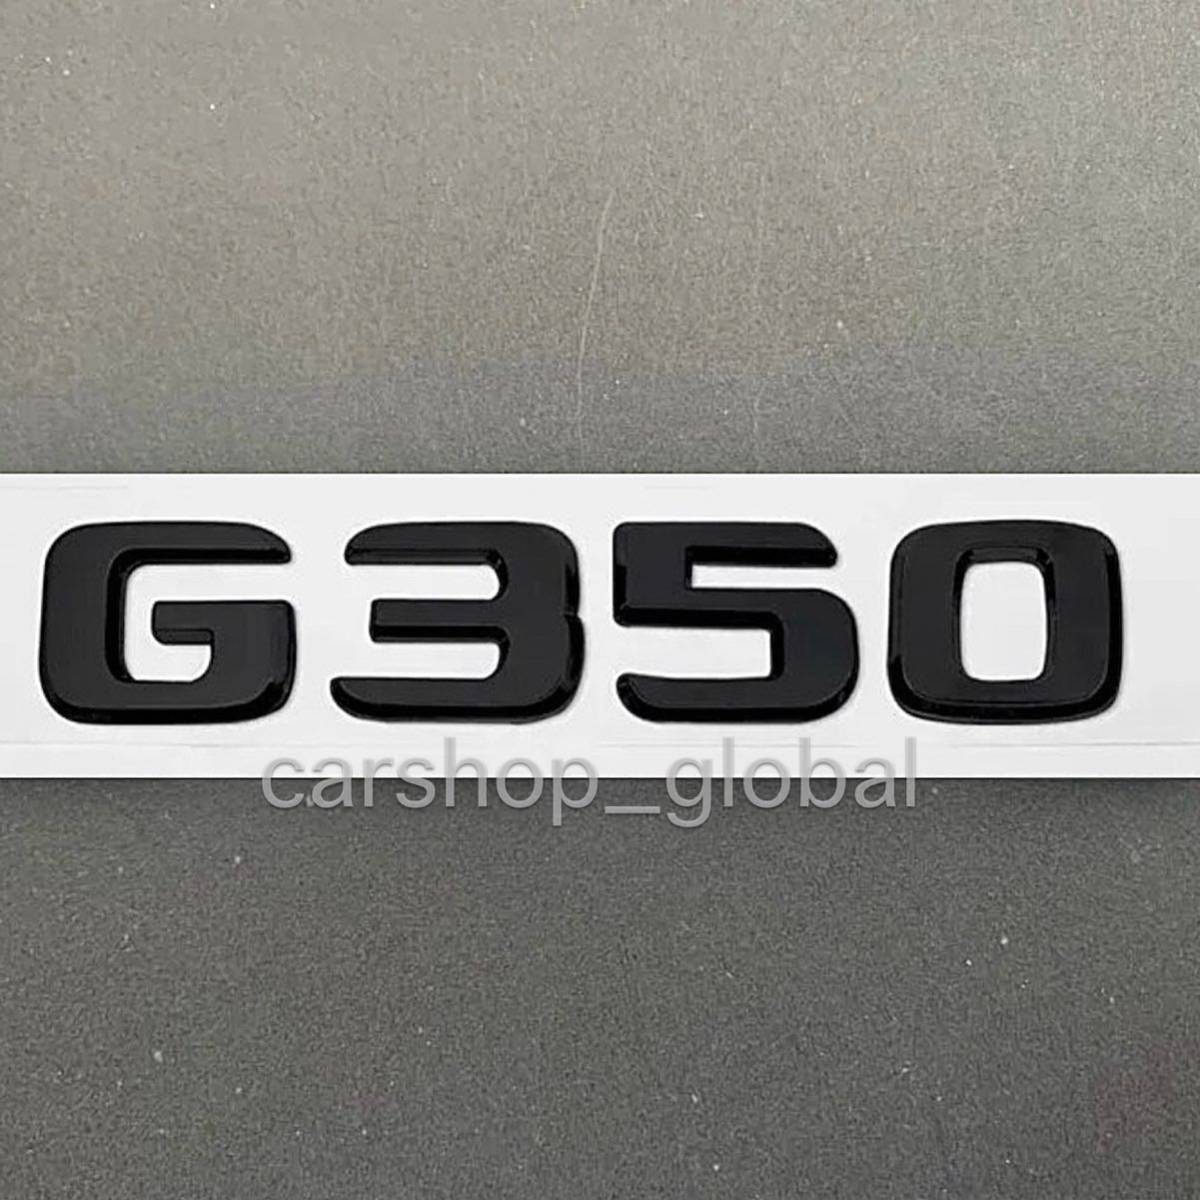 メルセデス ベンツ Gクラス G350 リアトランクエンブレム グロスブラック ステッカー フラットタイプ W463 G400/G500/G550/G320/G63/AMG等_画像1